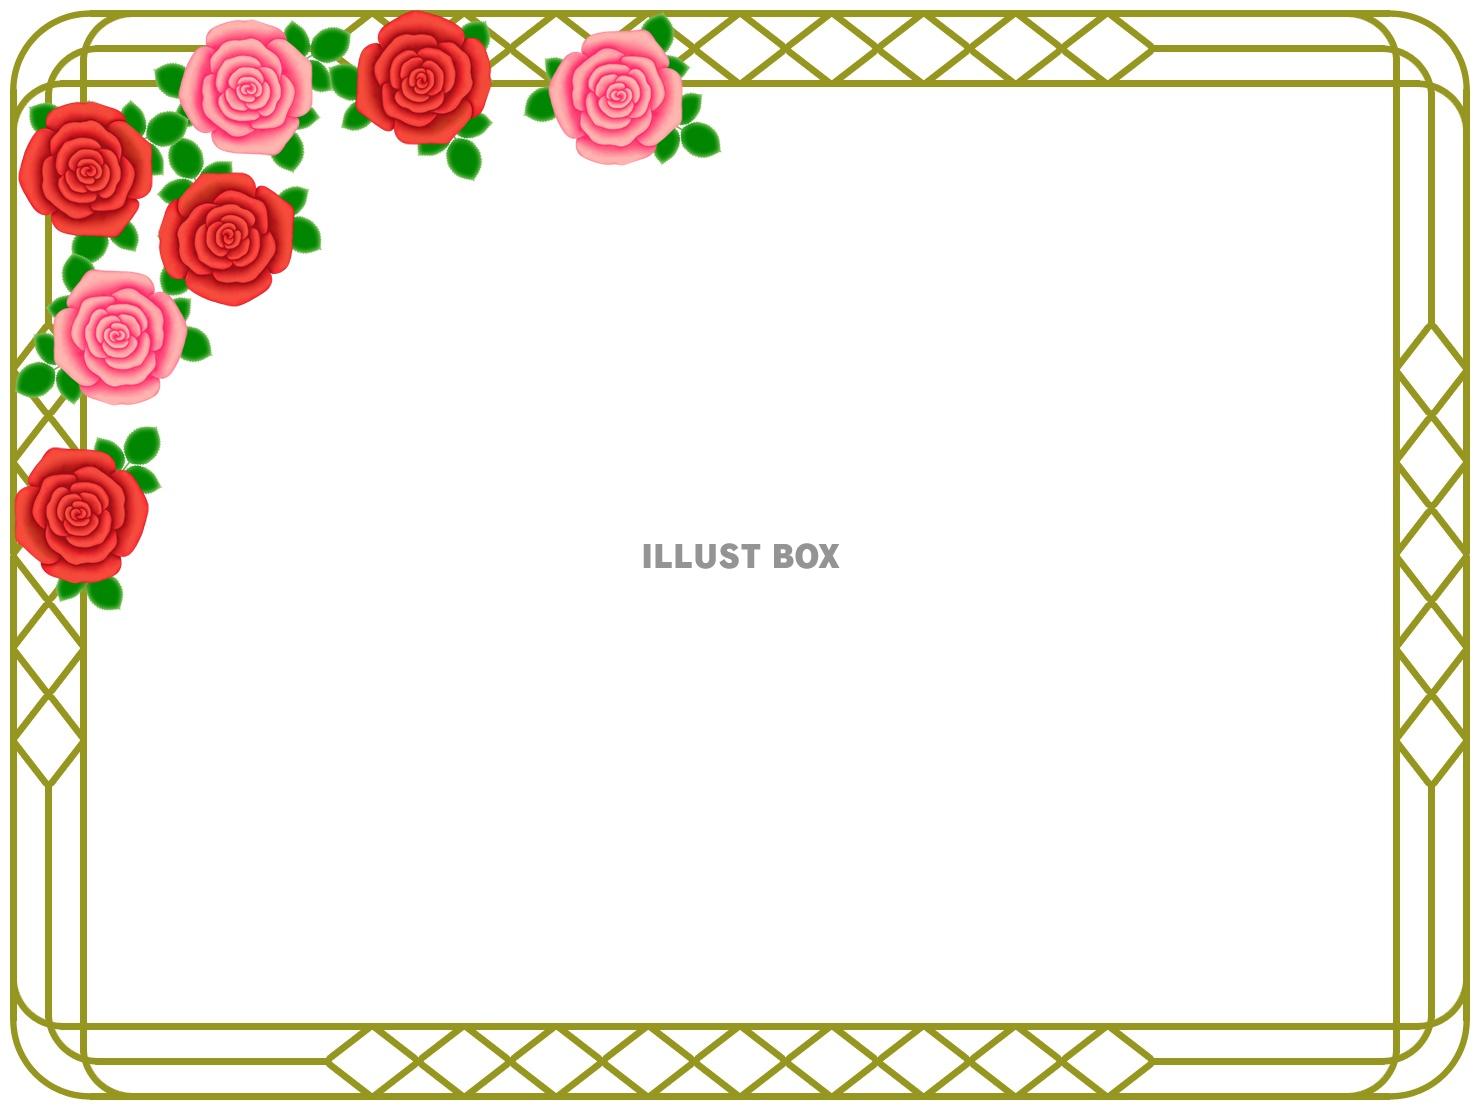 薔薇の花フレーム花模様飾り枠素材イラスト。ベクターあり